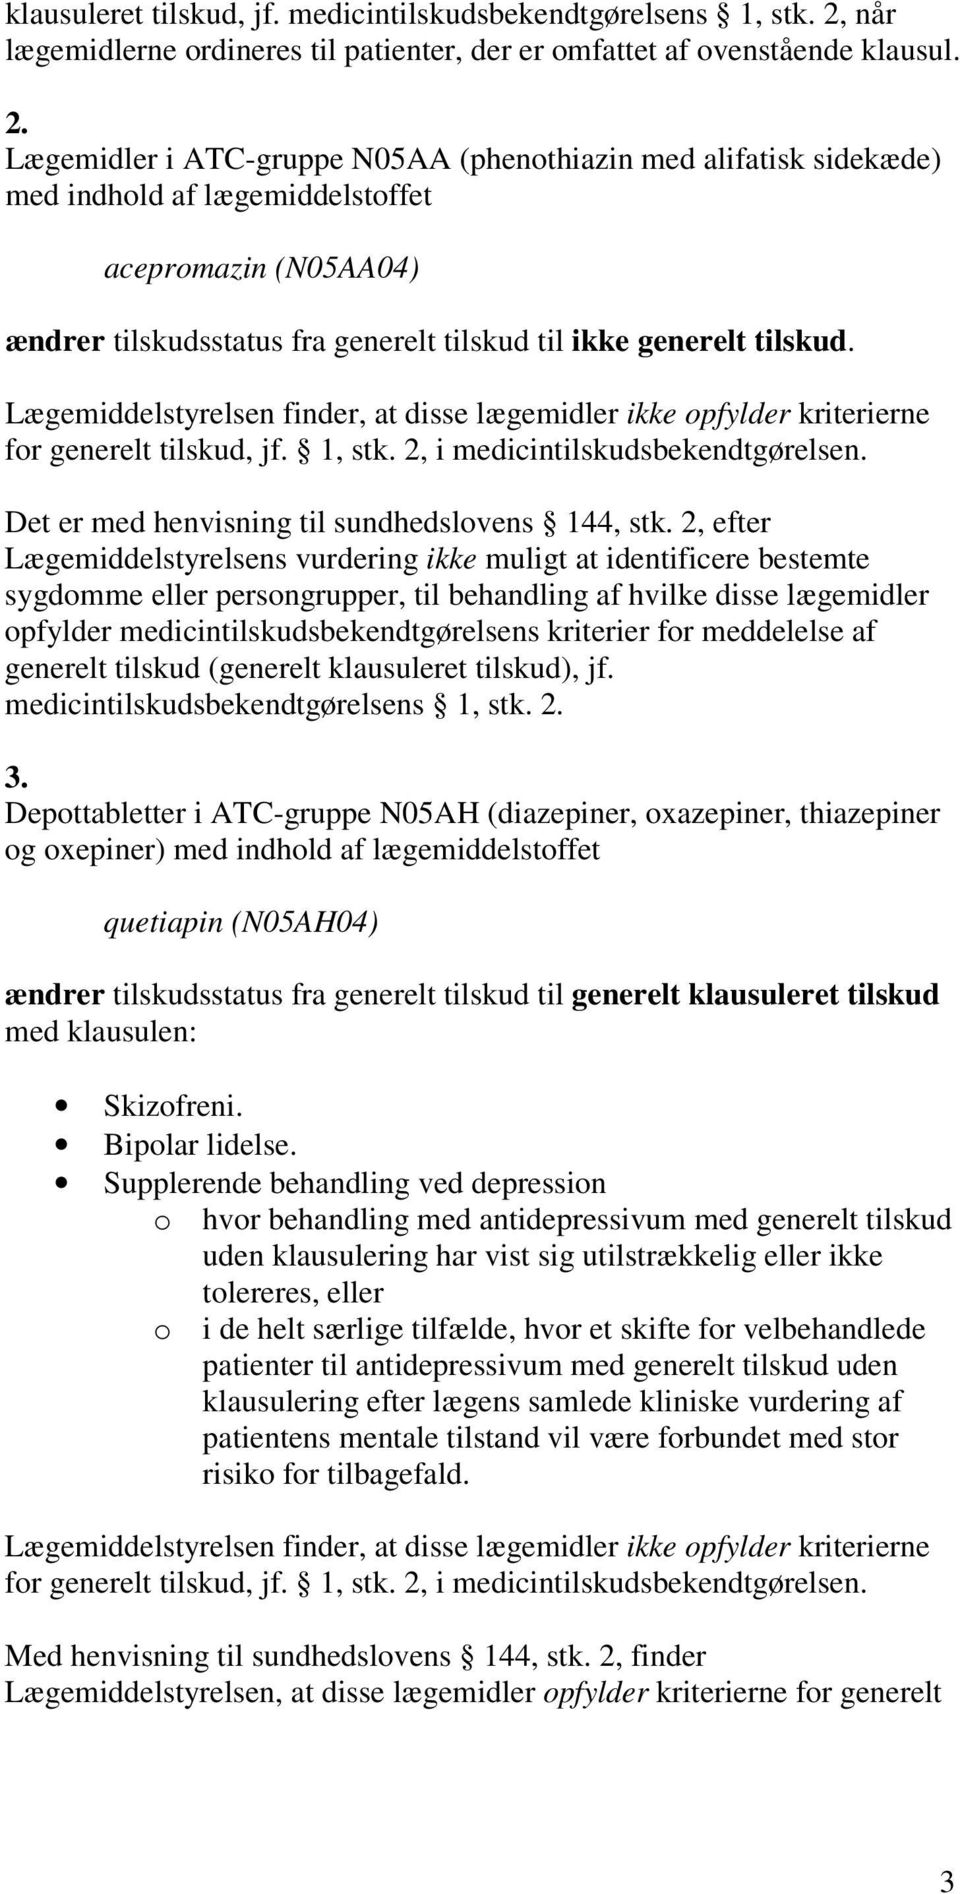 Lægemidler i ATC-gruppe N05AA (phenothiazin med alifatisk sidekæde) med indhold af lægemiddelstoffet acepromazin (N05AA04) ændrer tilskudsstatus fra generelt tilskud til ikke generelt tilskud.